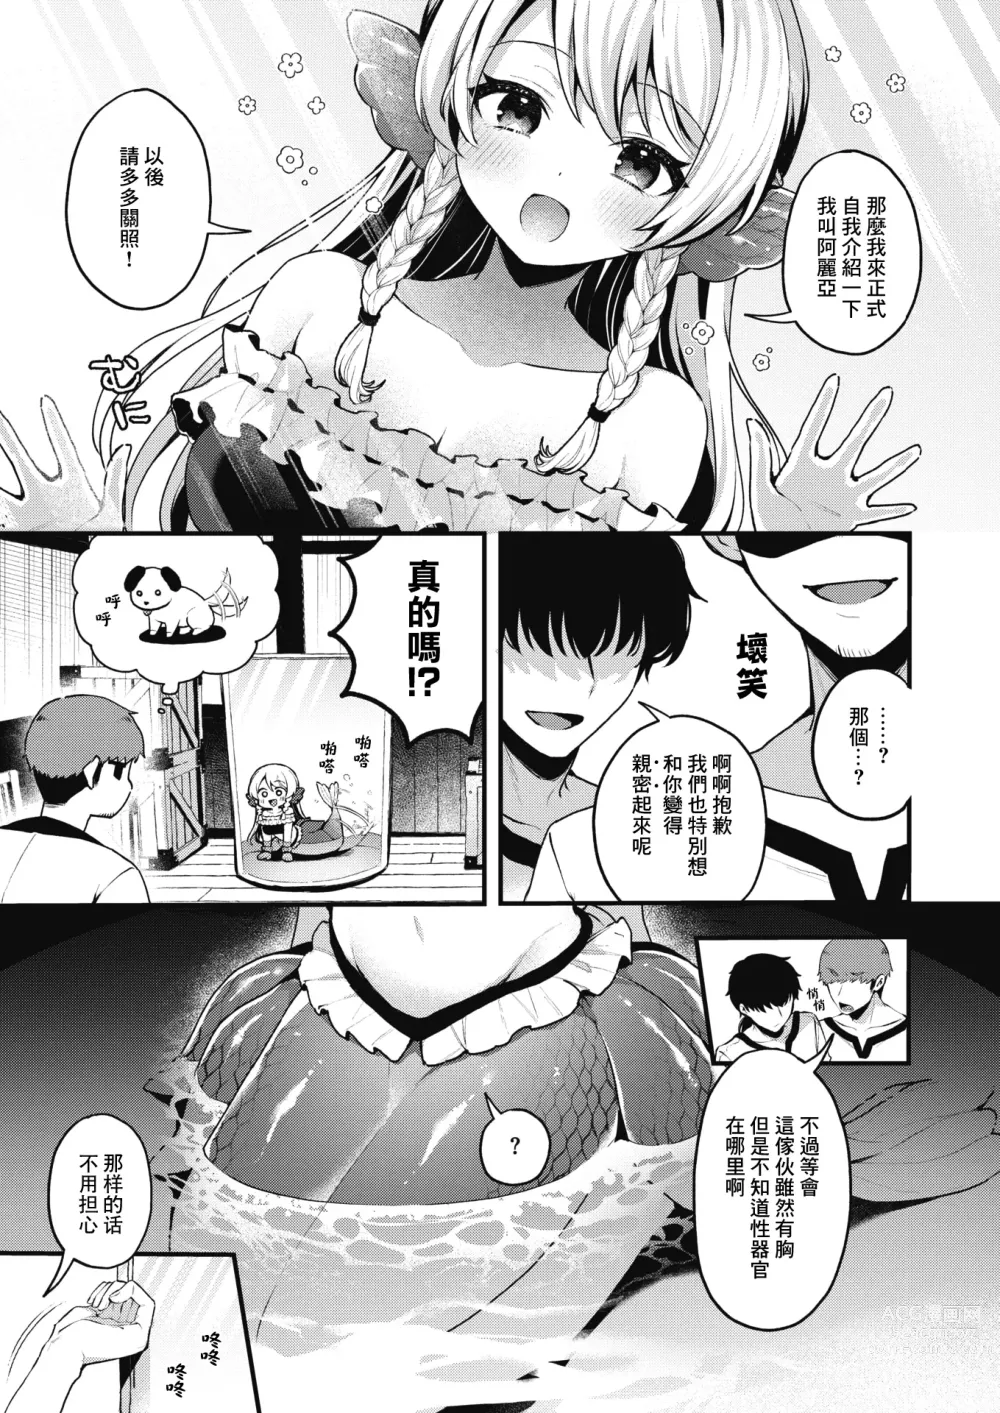 Page 6 of manga 雖然這裡沒有王子大人